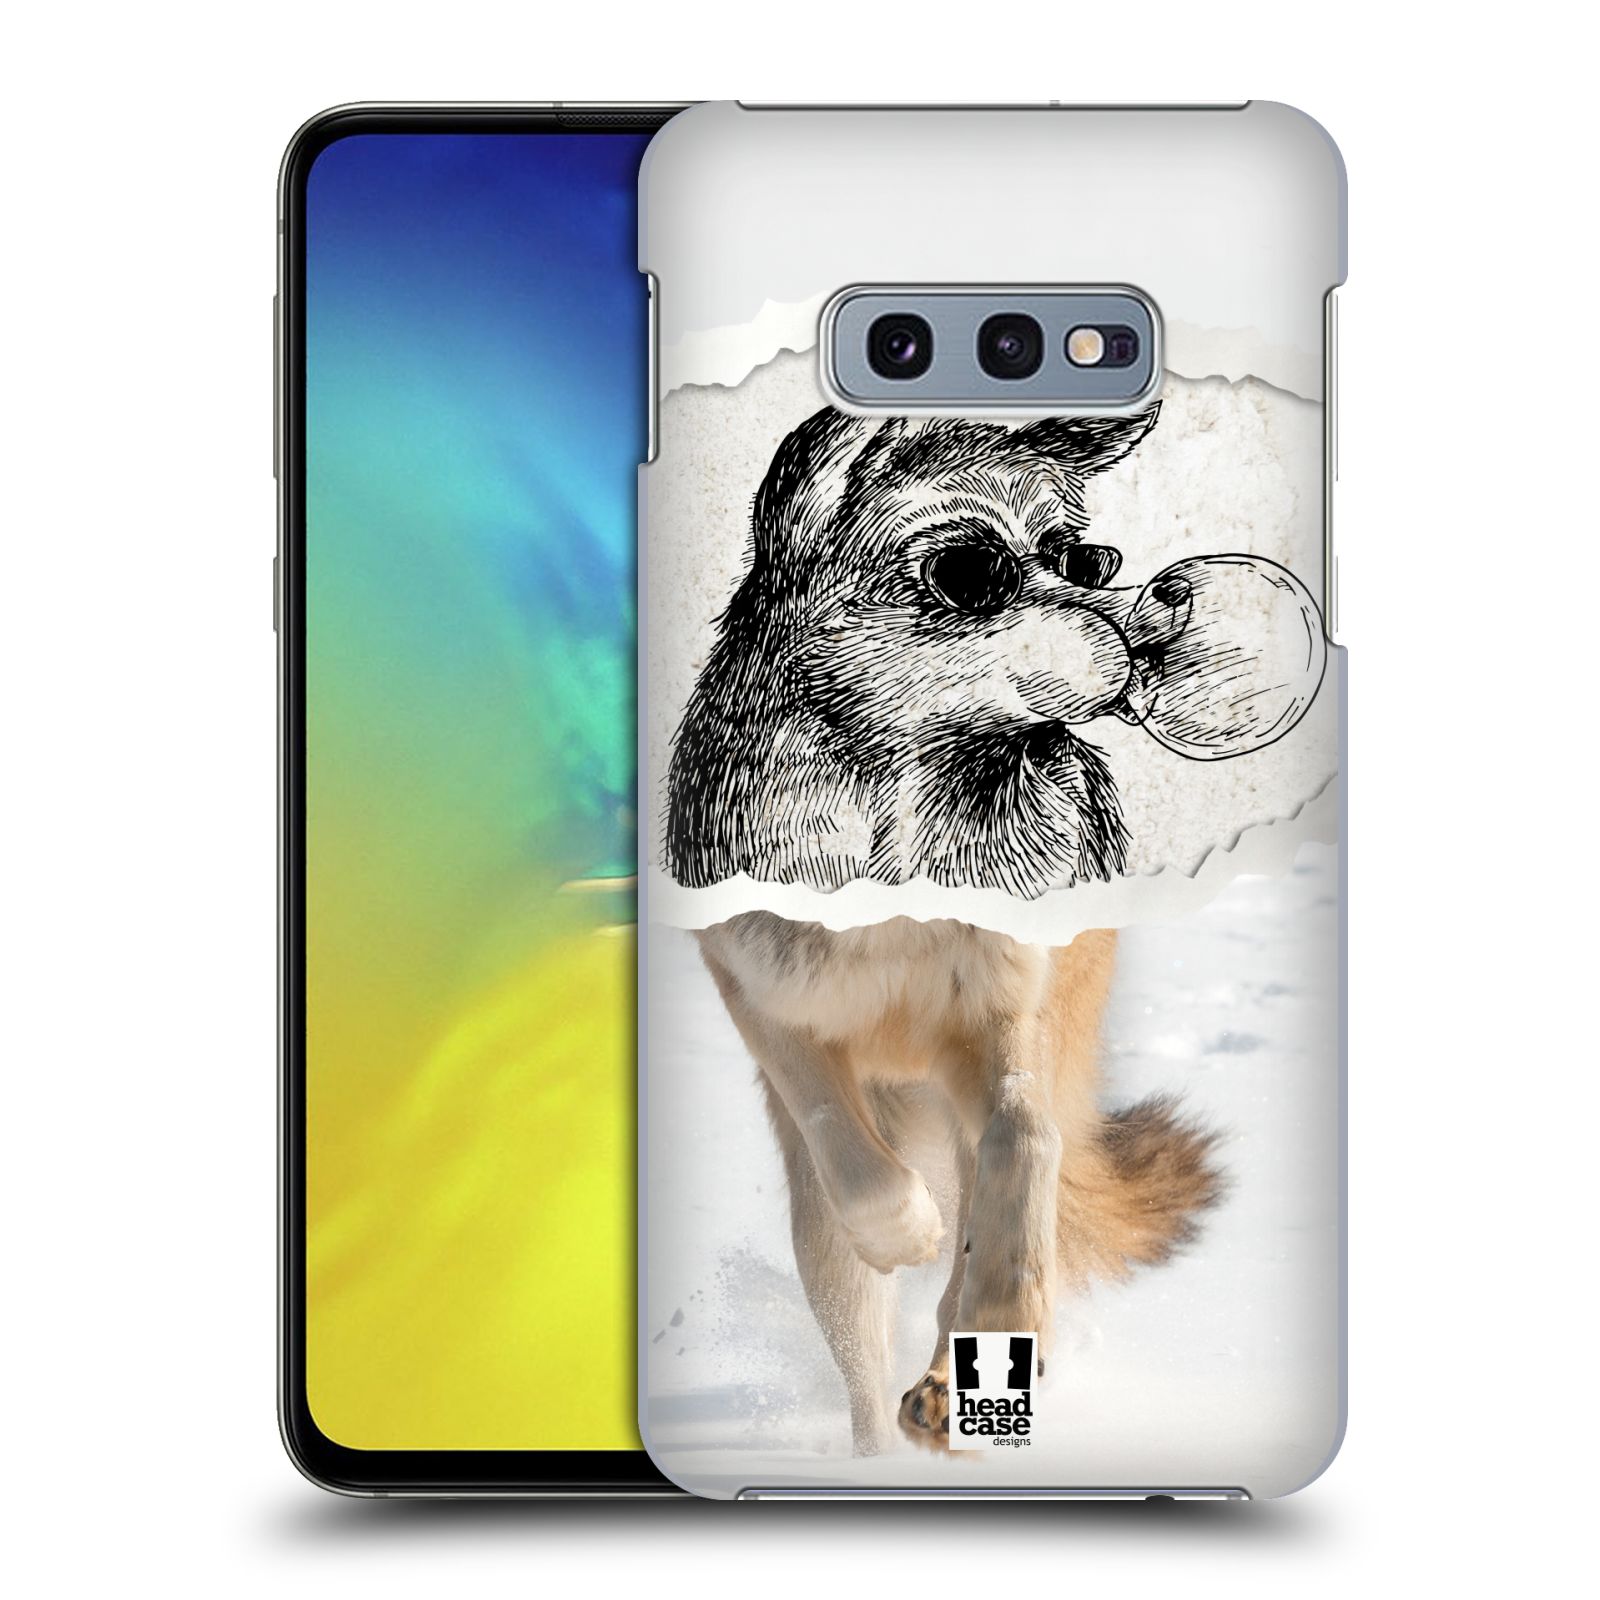 Pouzdro na mobil Samsung Galaxy S10e - HEAD CASE - vzor zvířata koláž vlk pohodář